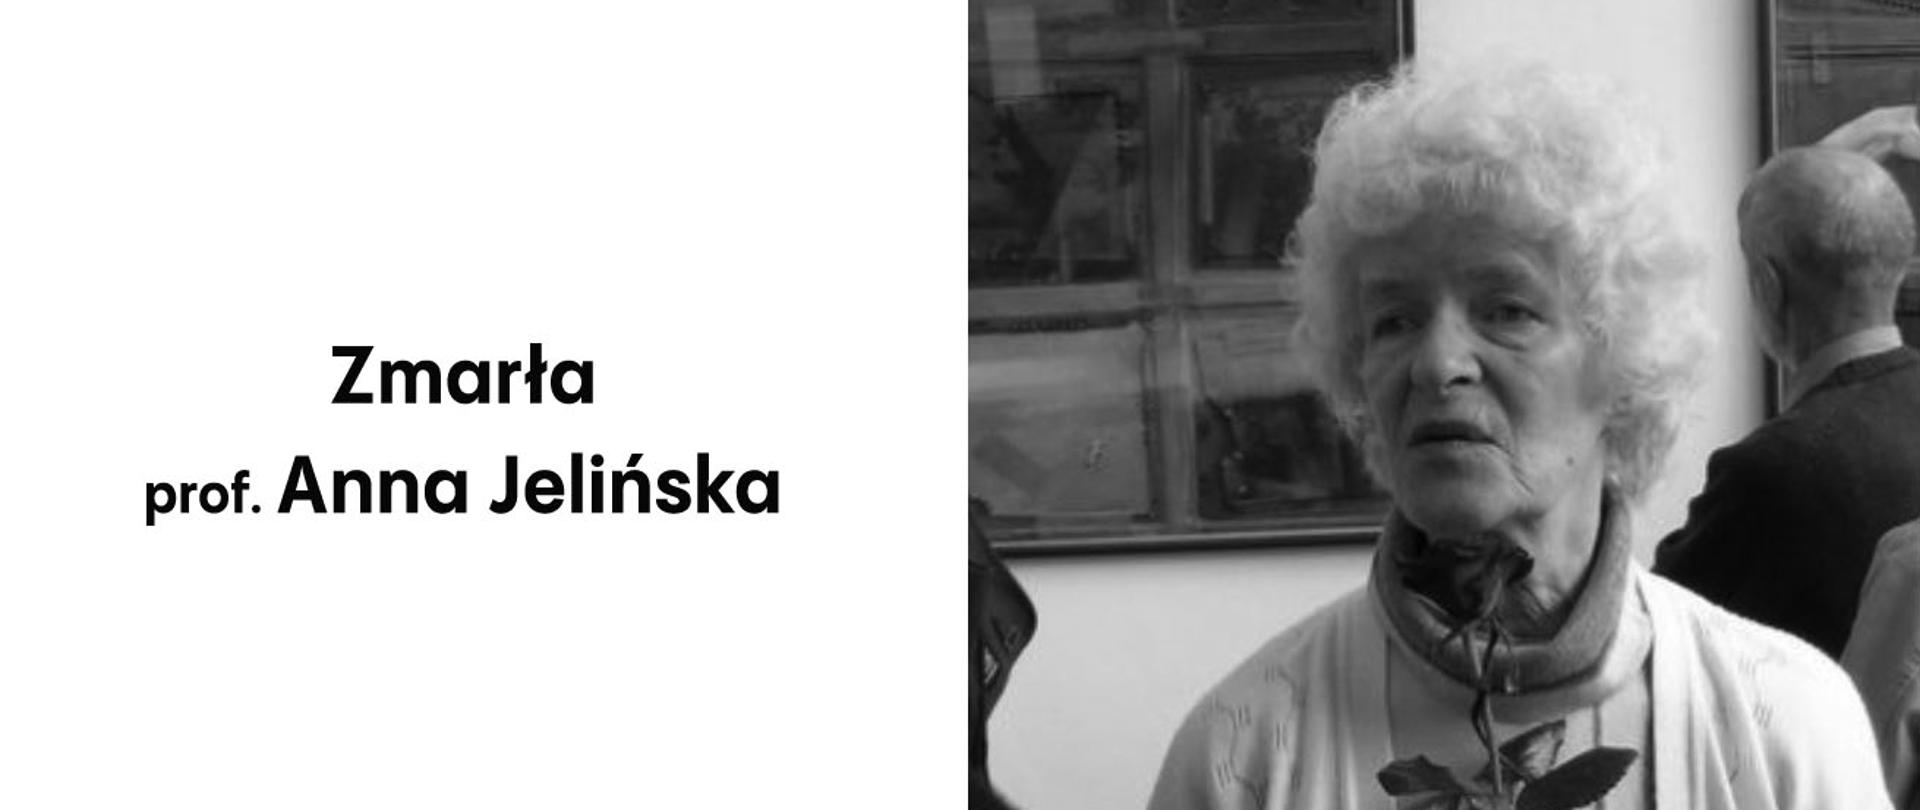 Baner informujący o śmierci prof. Anny Jelińskiej